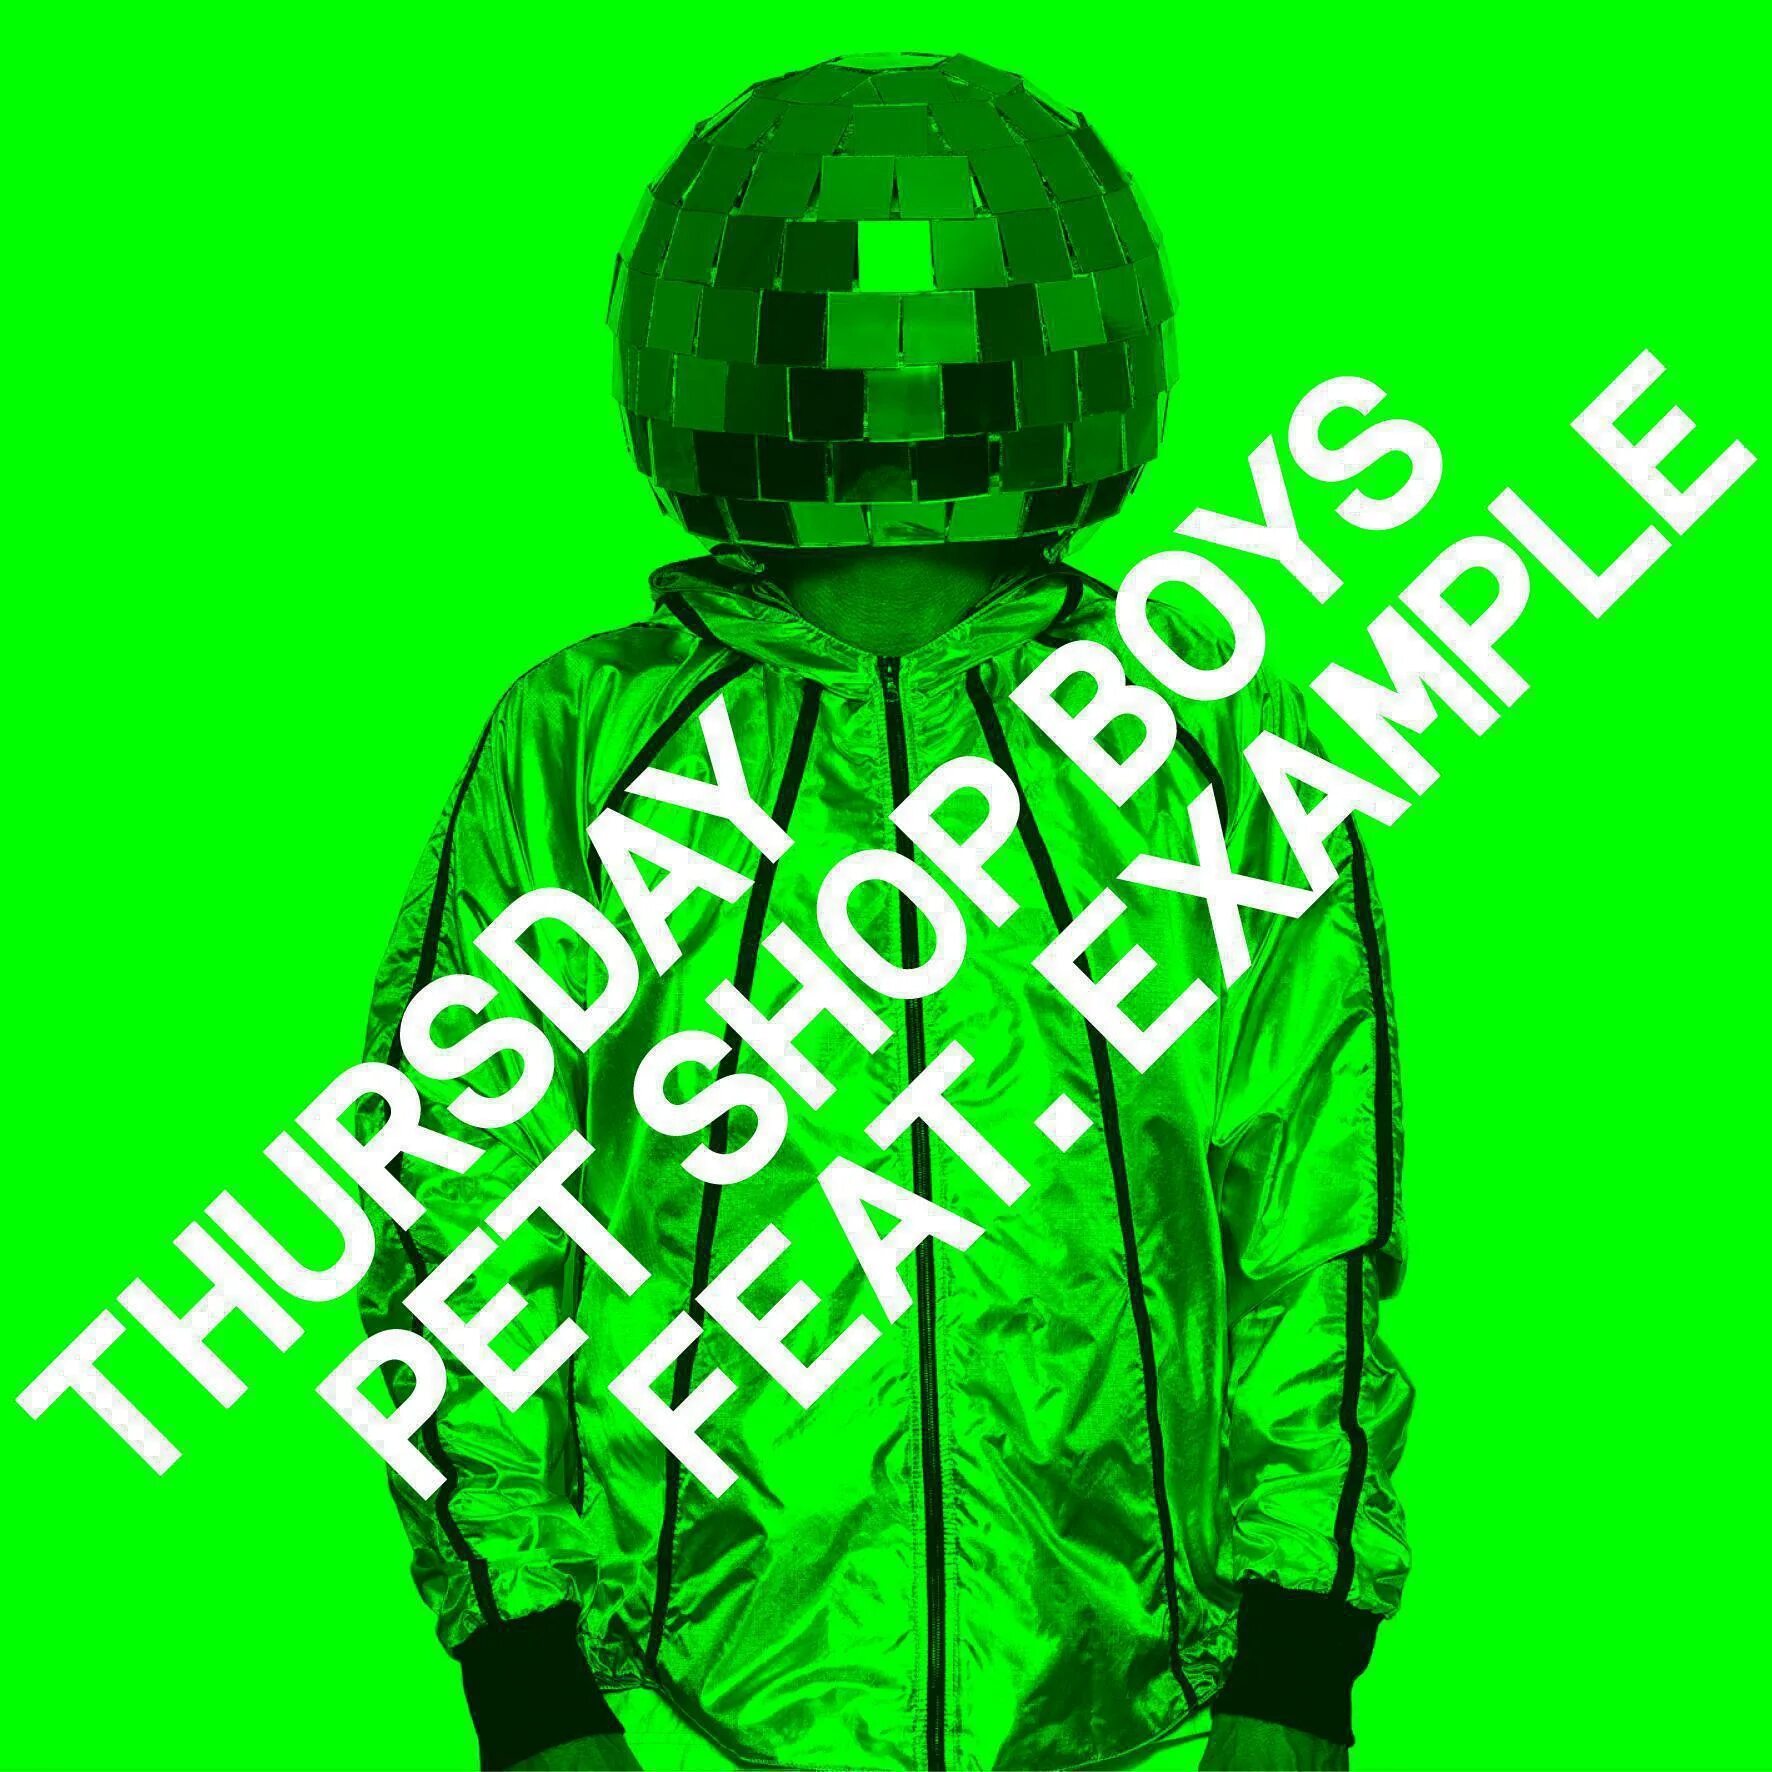 Pet shop boys. Pet shop boys Thursday. Pet shop boys Remixes. Pet shop boys Thursday Remixes. Pet shop boys remix